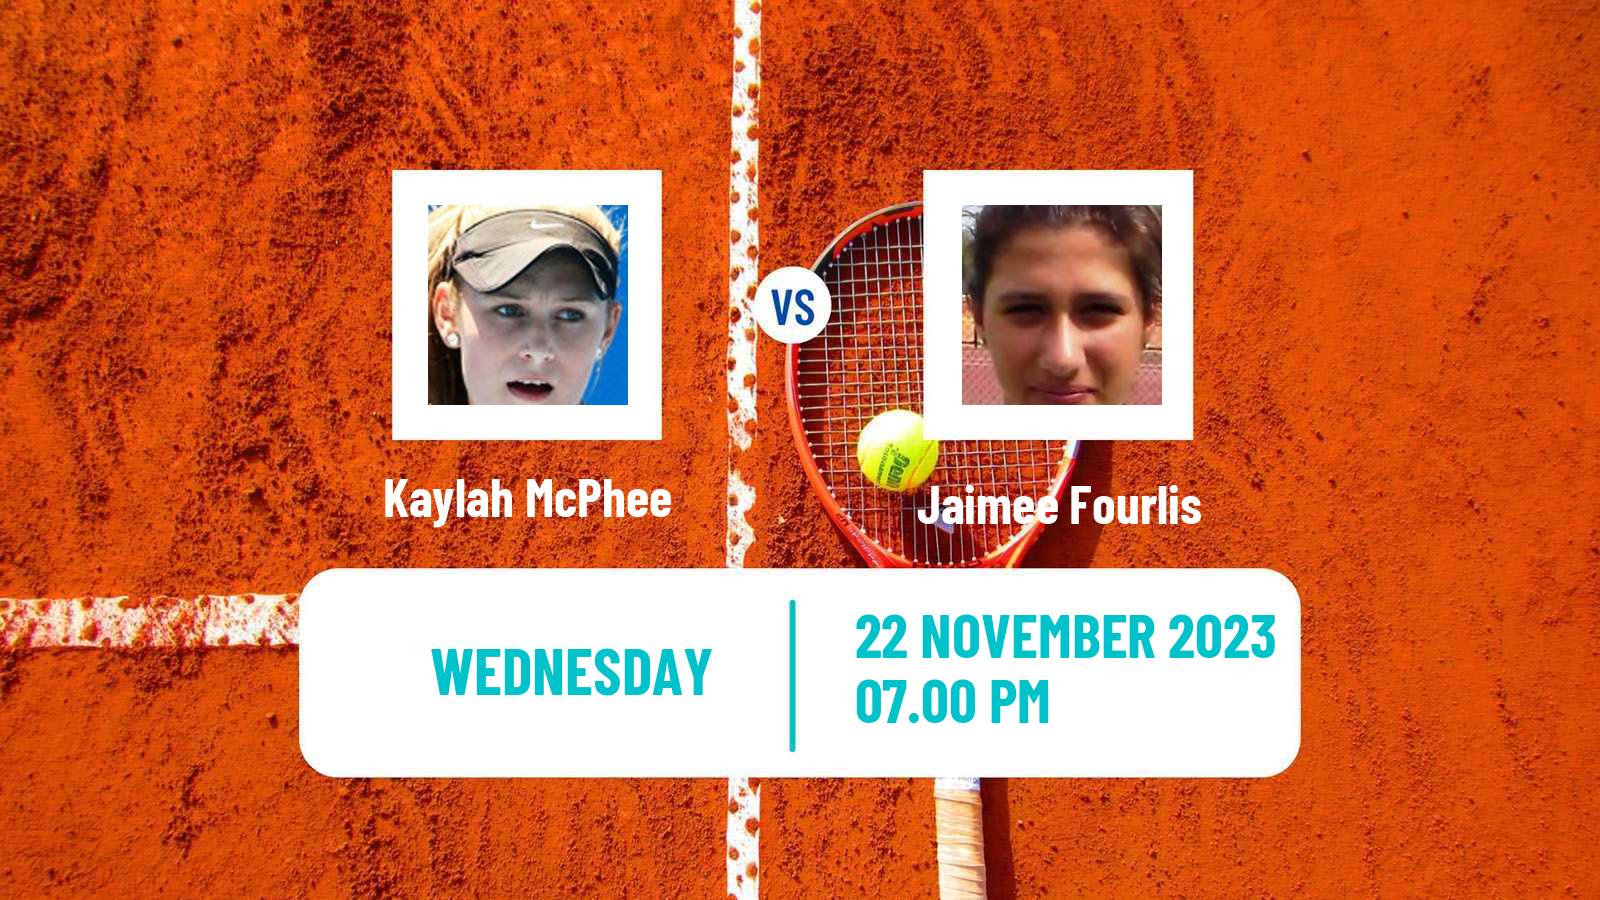 Tennis ITF W60 Brisbane Women Kaylah McPhee - Jaimee Fourlis